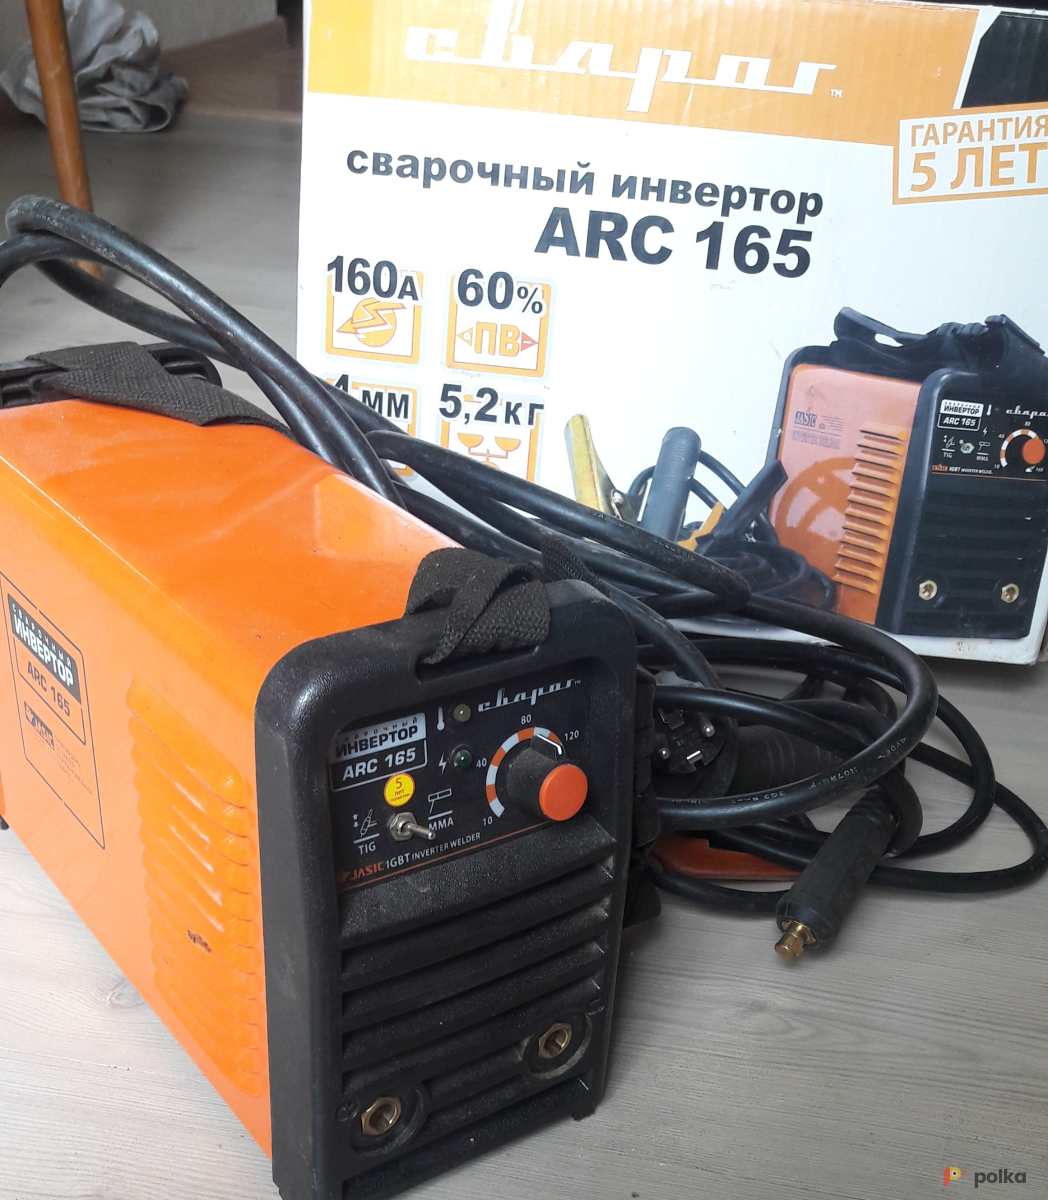 Возьмите Сварочный инвертор Сварог ARC-165 напрокат (Фото 2) в Москве